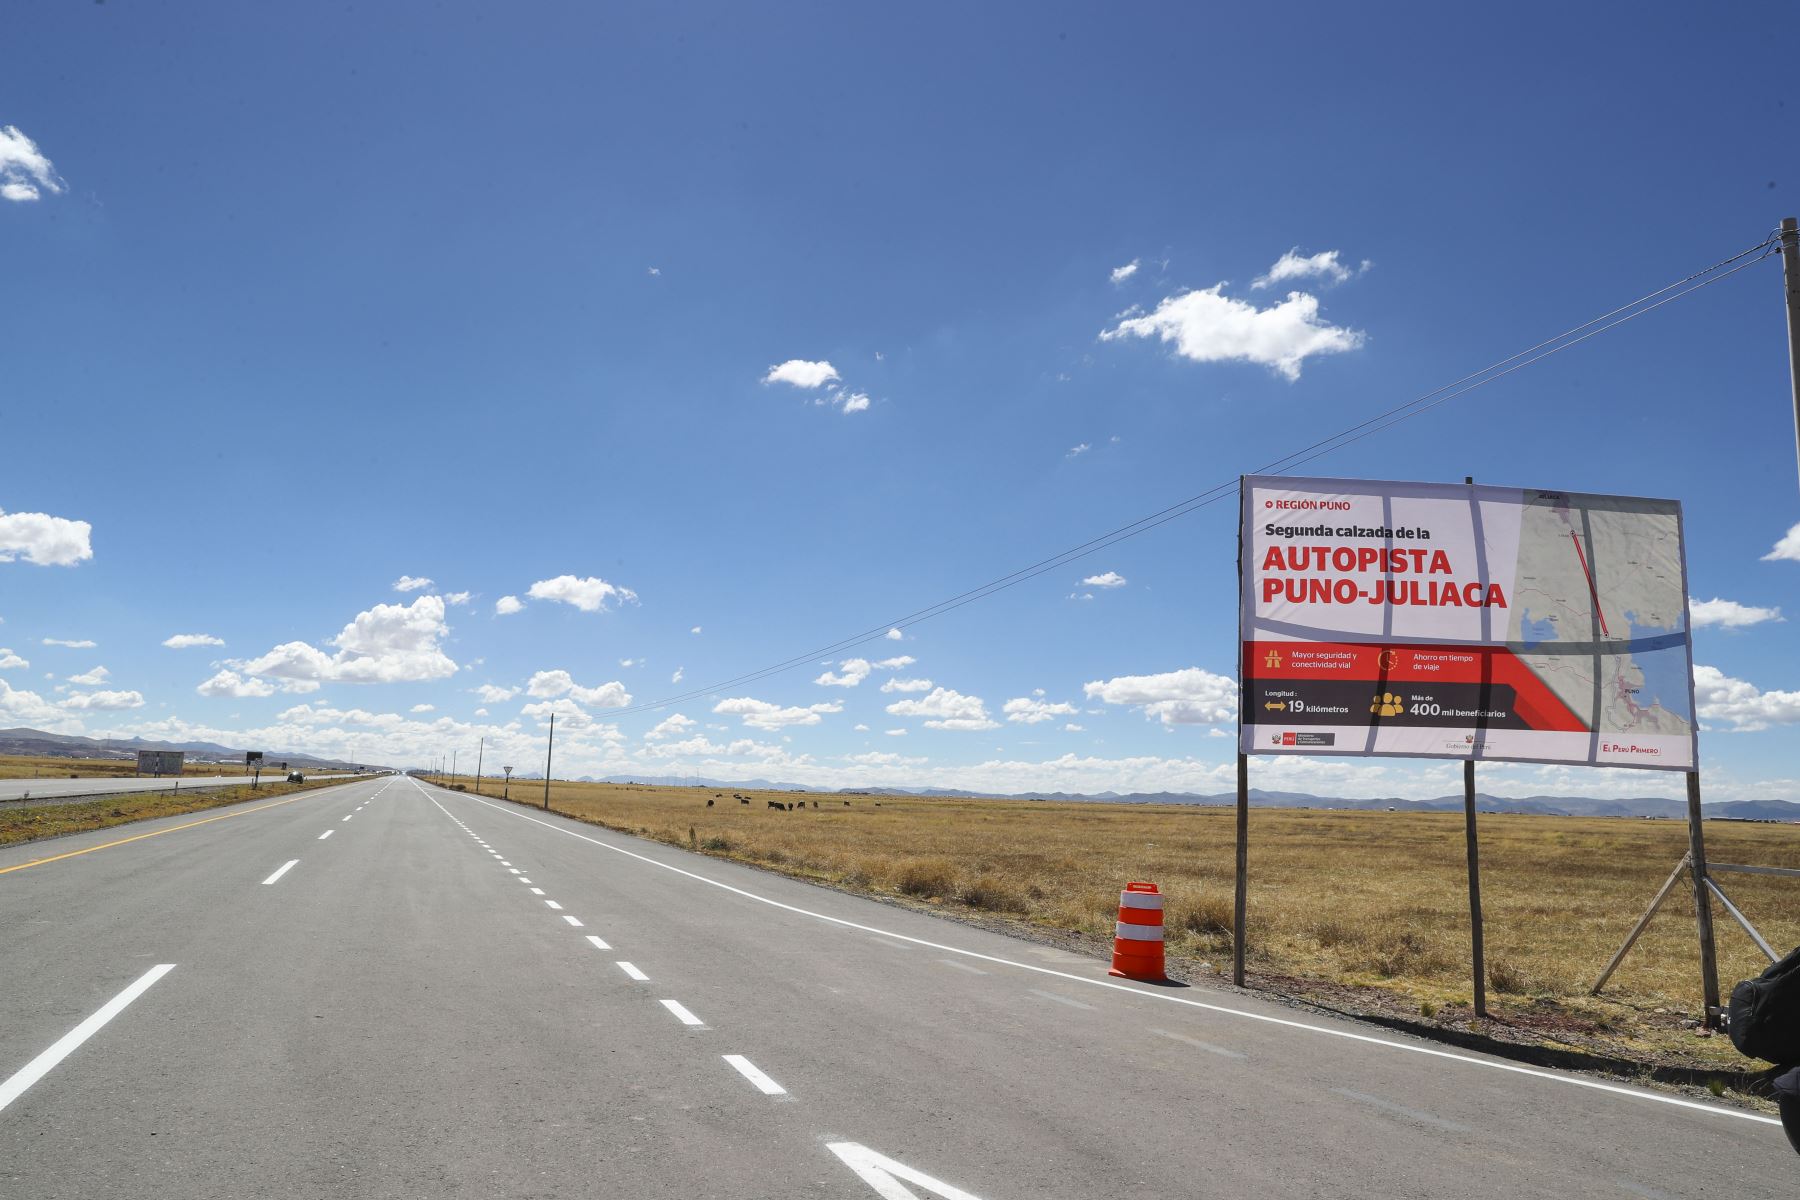 Las obras en la autopista Juliaca-Puno estarán concluidas en julio de 2021, informó el MTC. ANDINA/Archivo